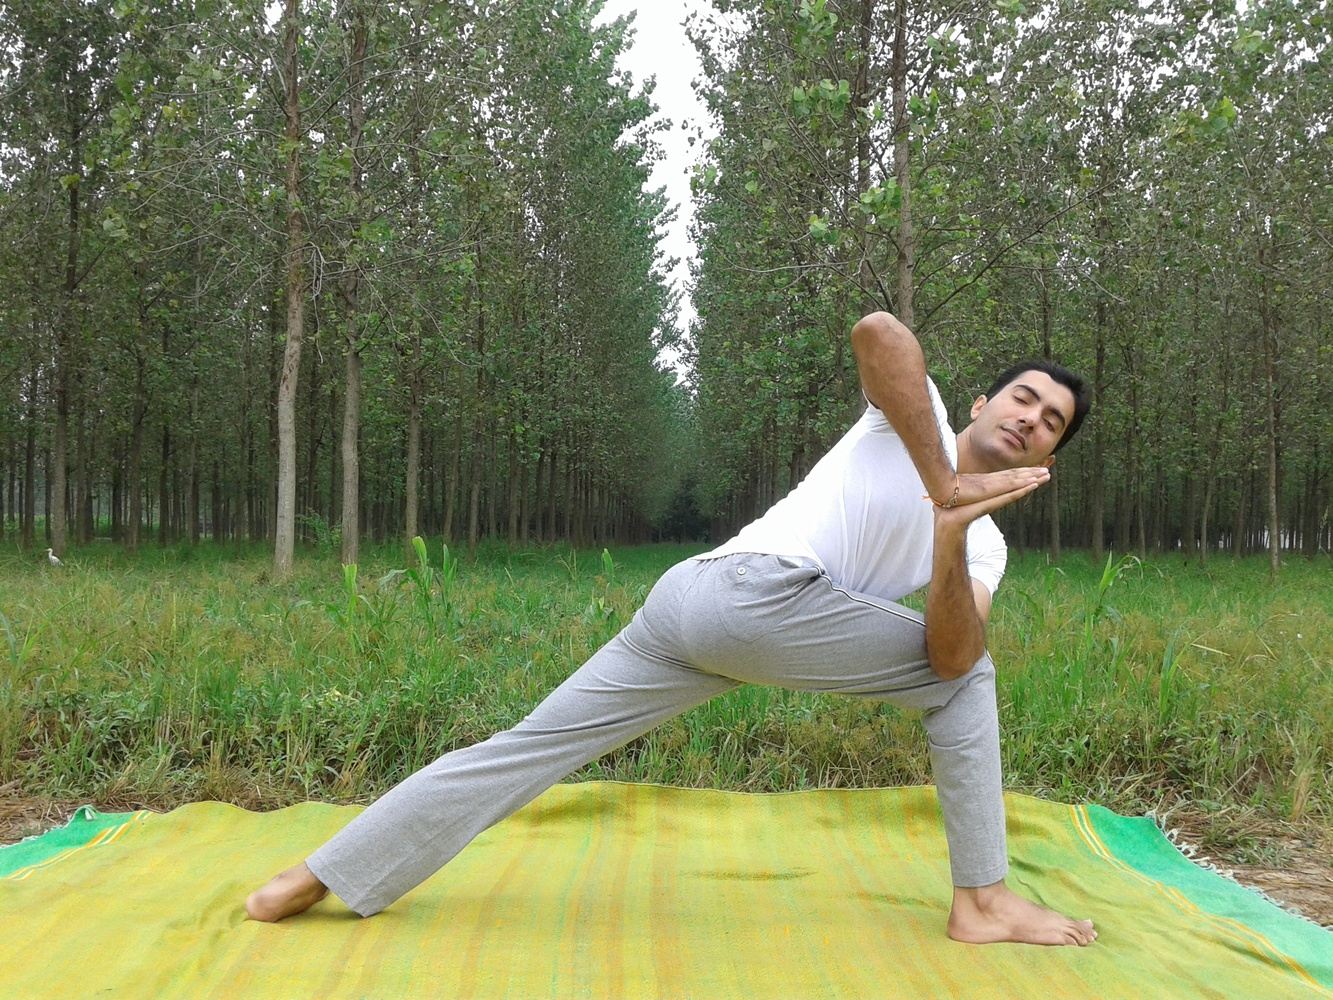 200 Hour Yoga Teacher Training on Sustainable Farm